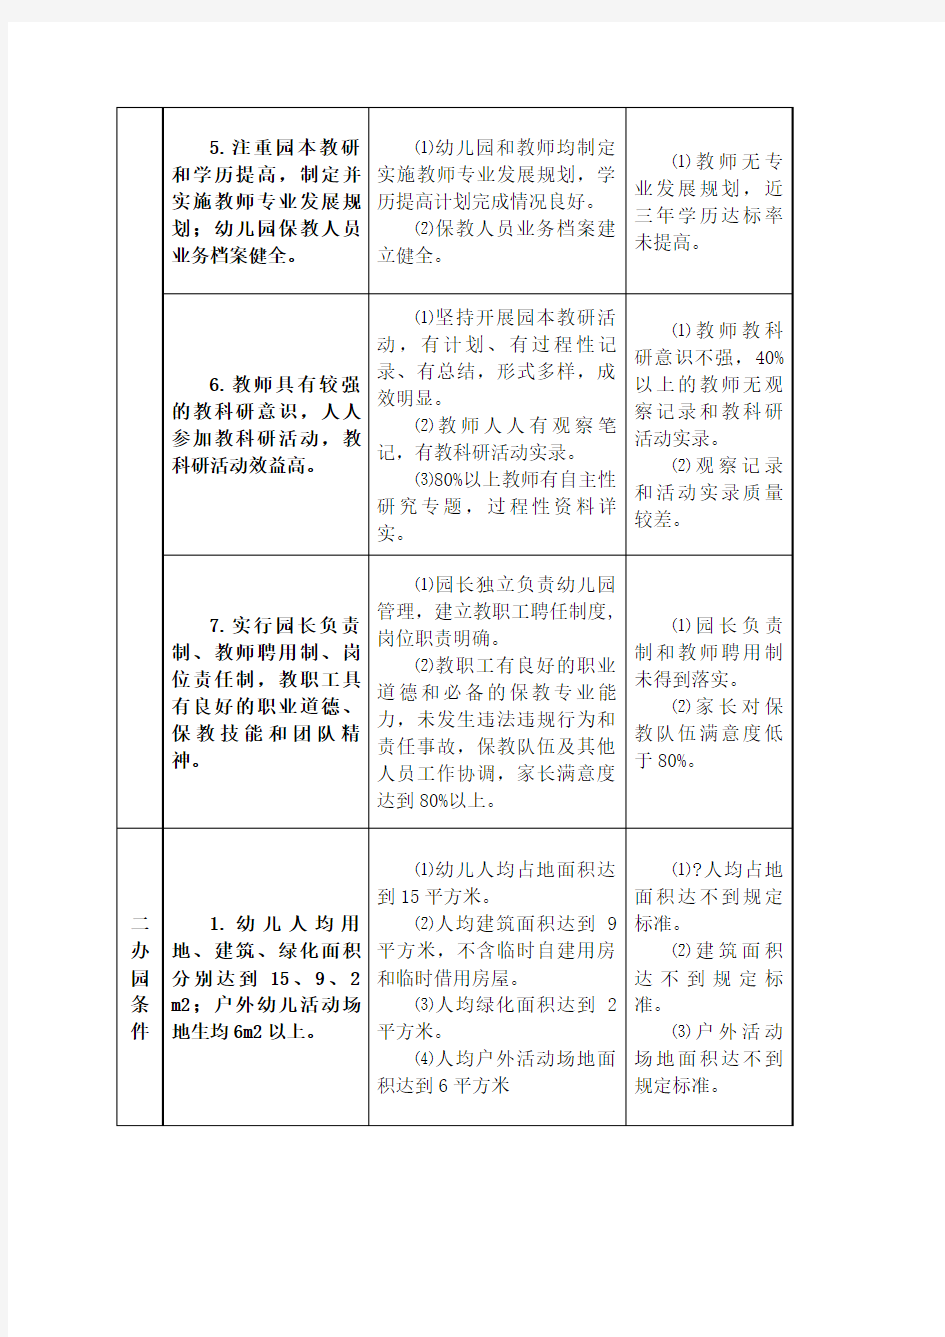 江苏省优质幼儿园评估标准及评估细则